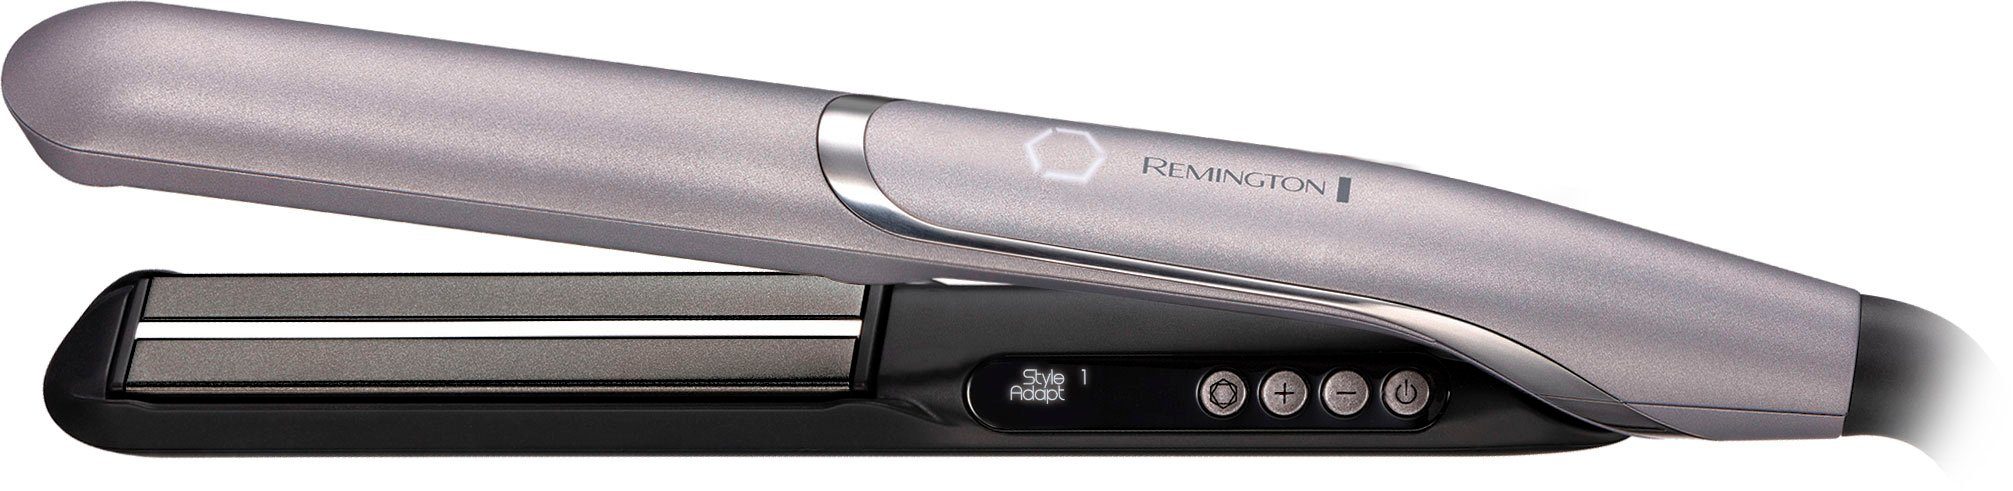 S9880 Memory You™ Keramik-Beschichtung, Nutzerprofile StyleAdapt™ lernfähiger Haarglätter, PROluxe Glätteisen Remington 2 Funktion,